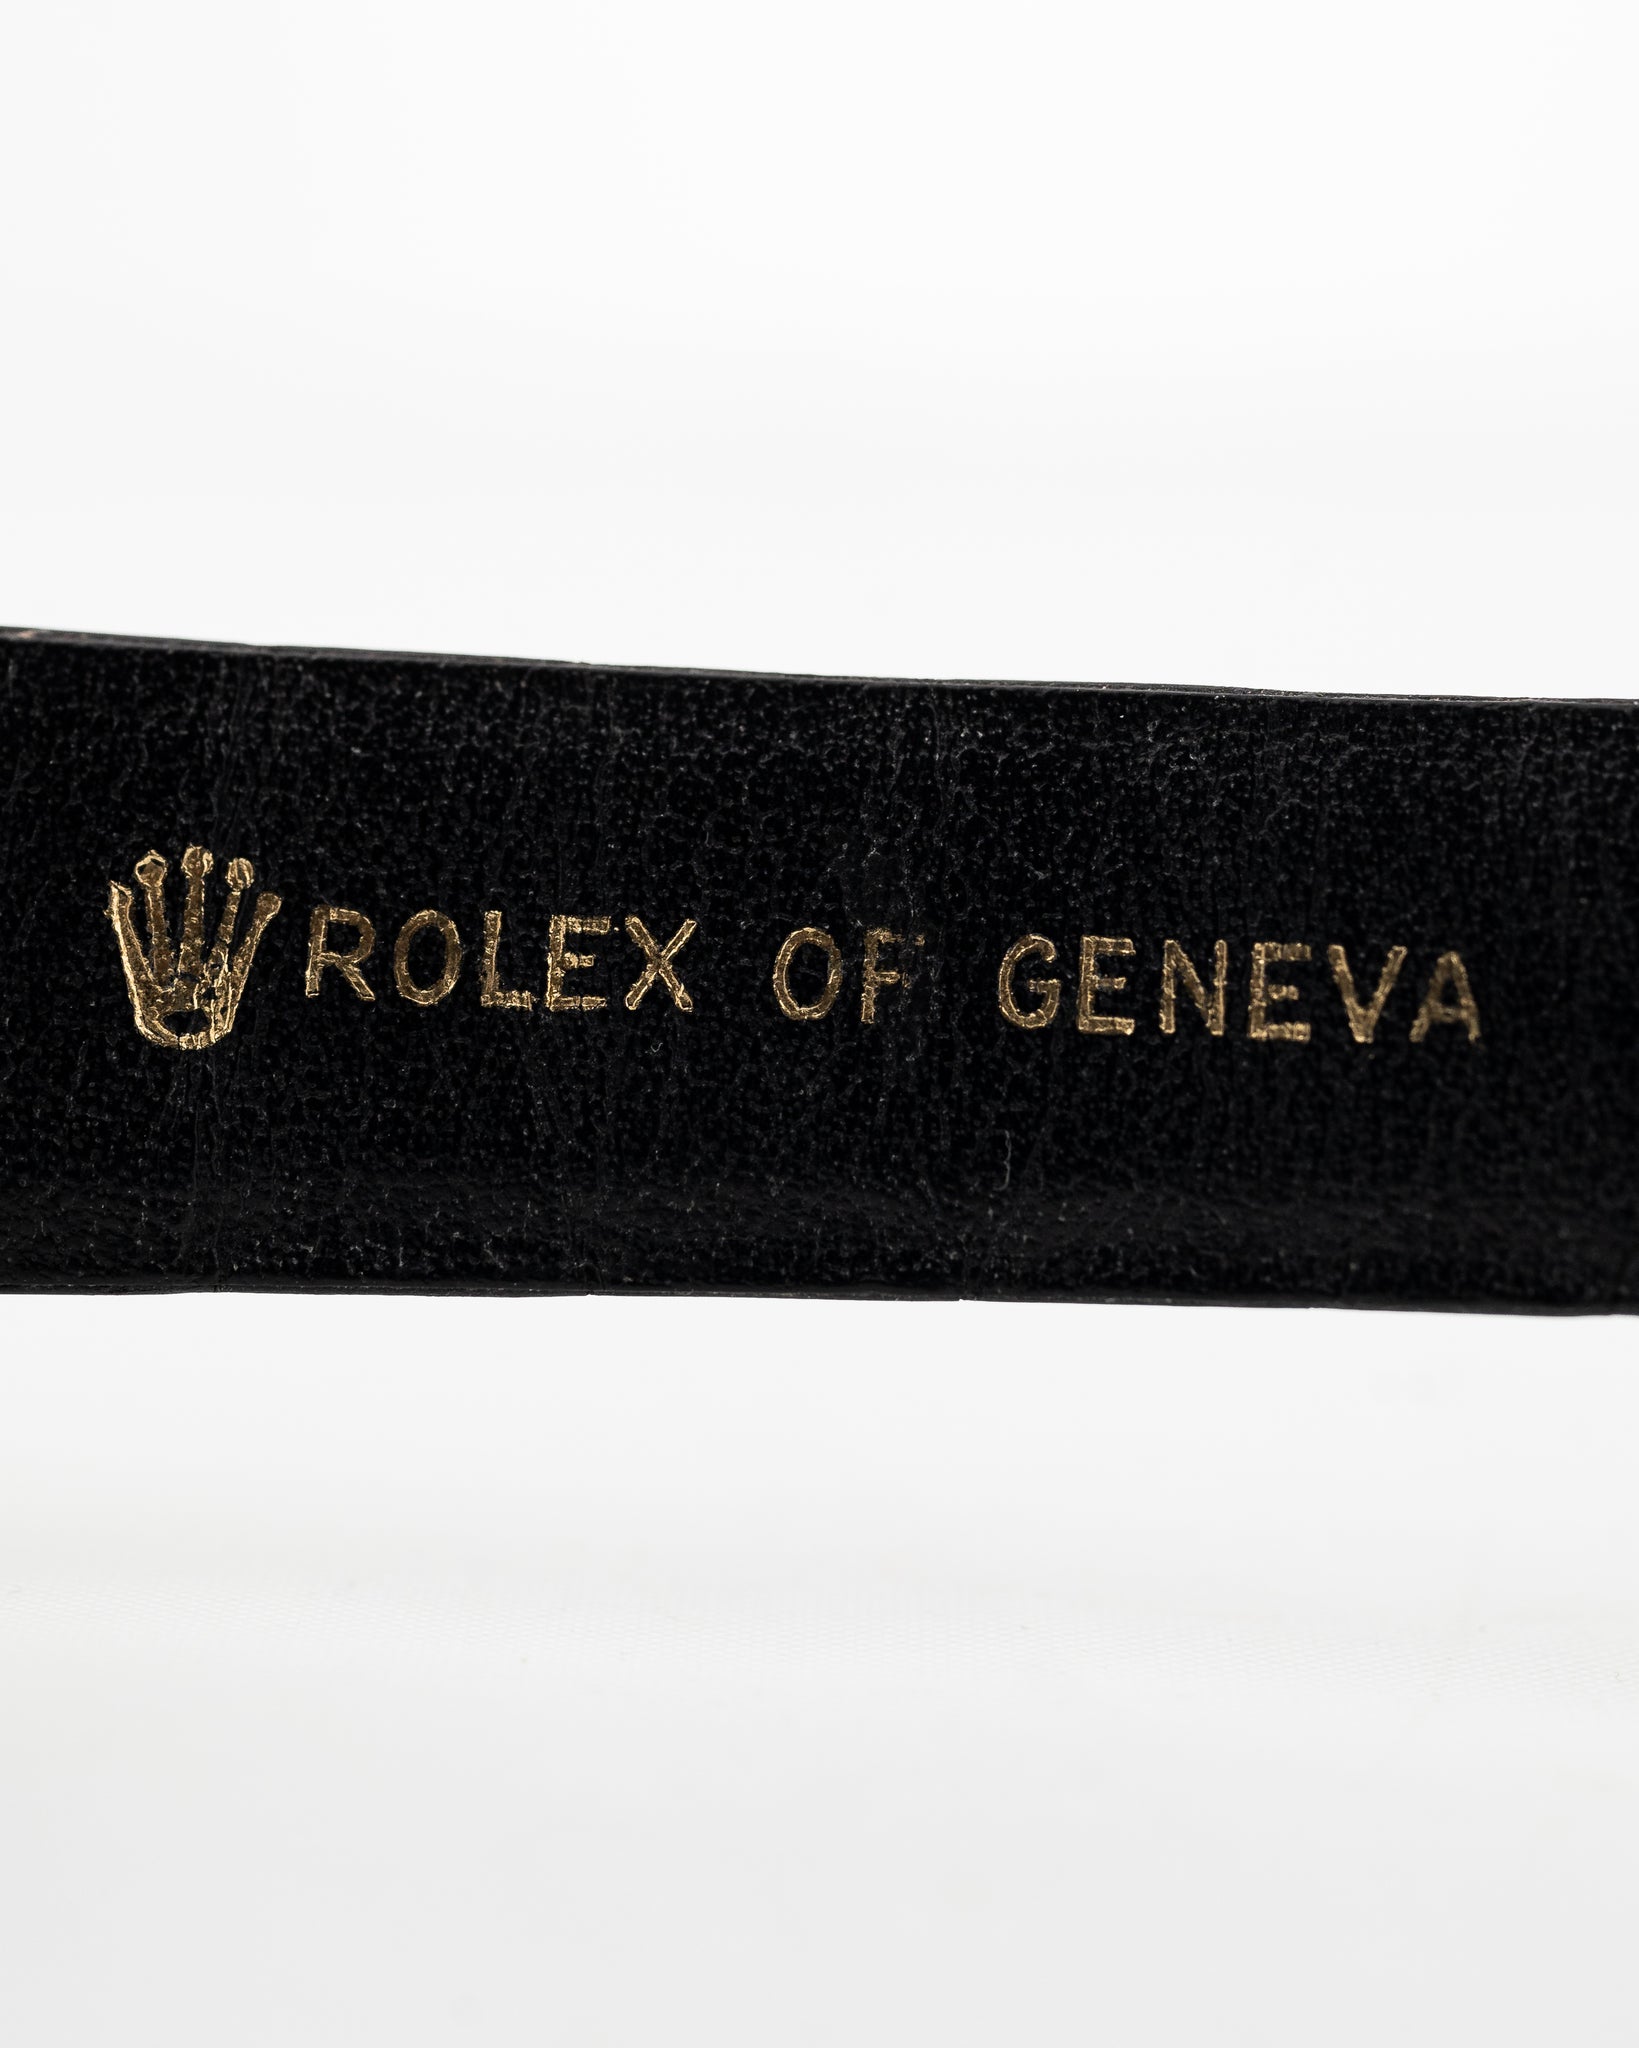 Rolex Cellini 18k White Dial 1989